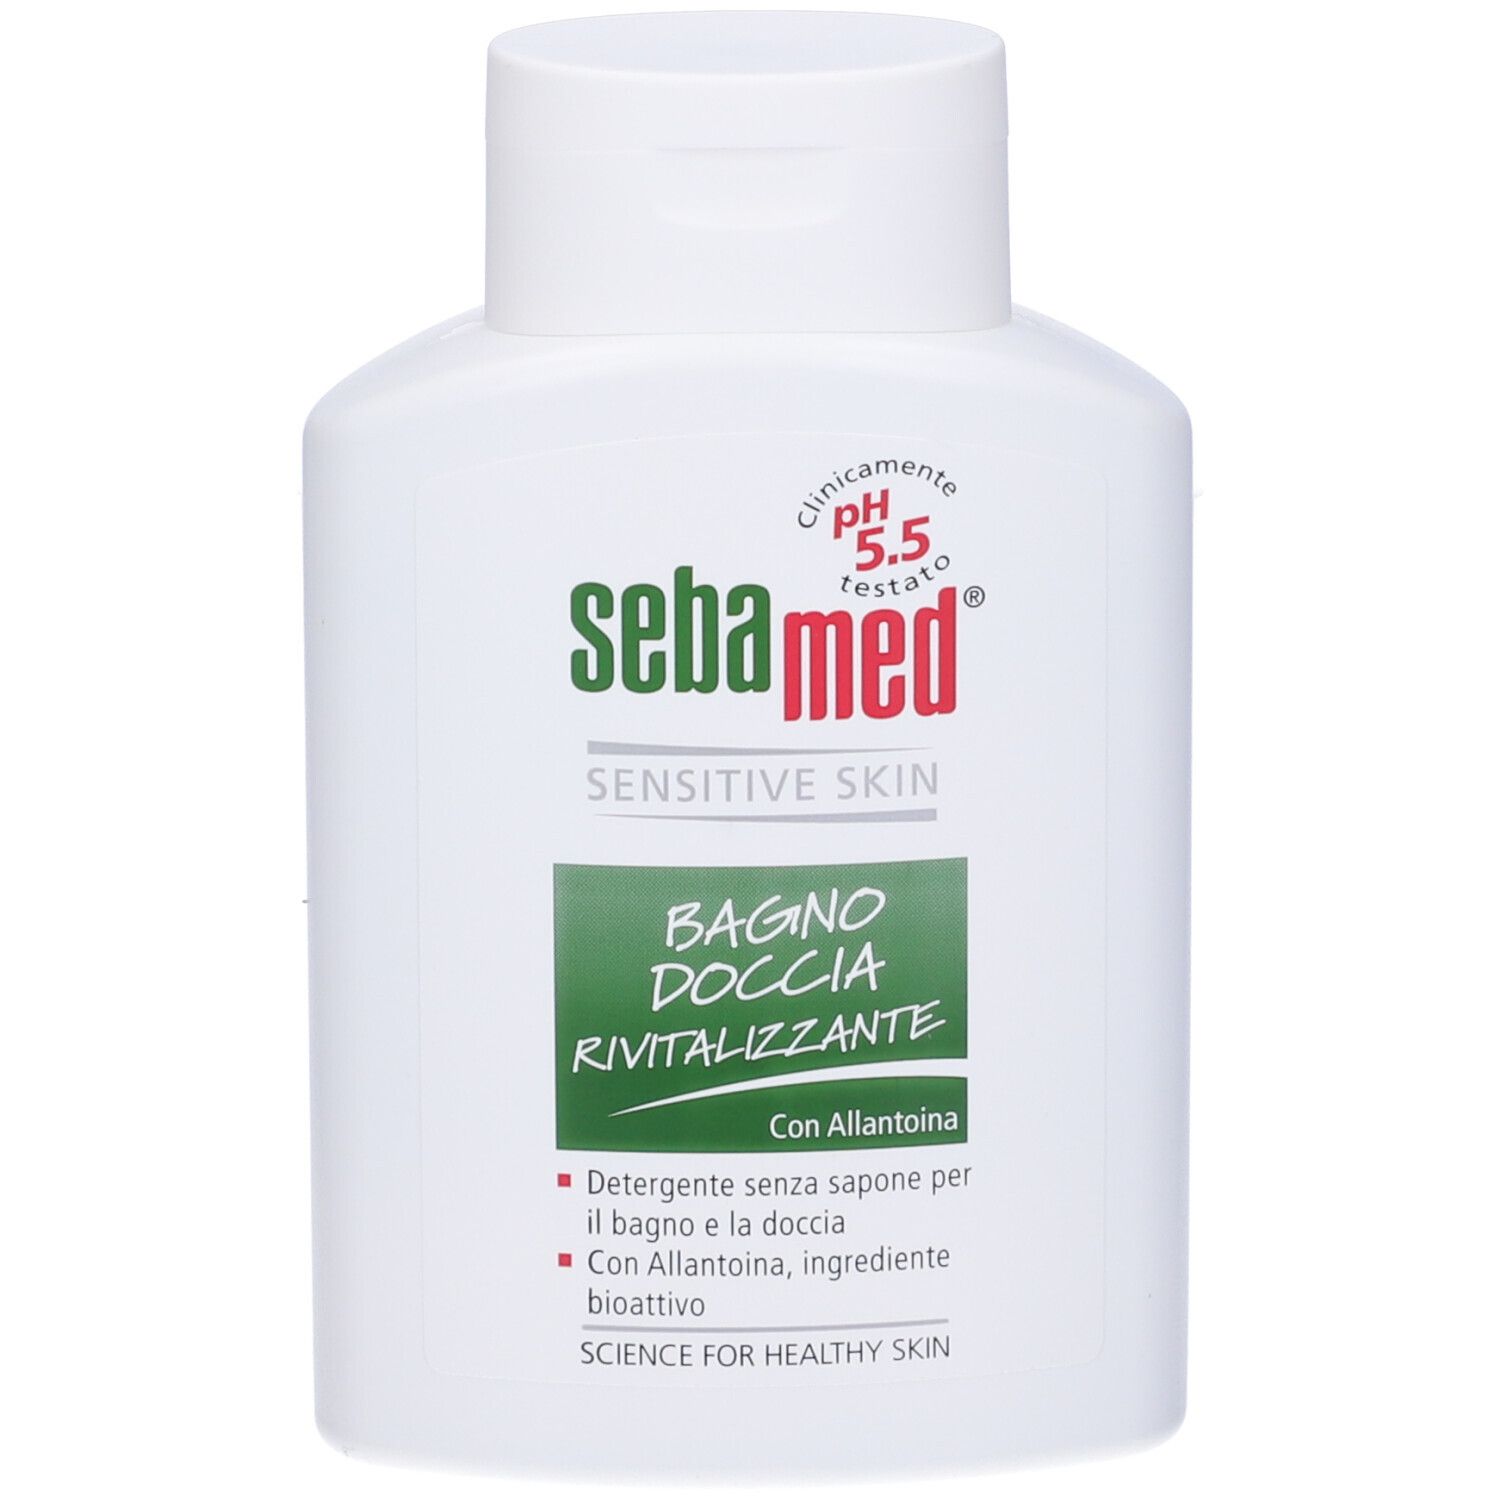 Image of Sebamed® Sensitive Skin Bagno Doccia Rivitalizzante